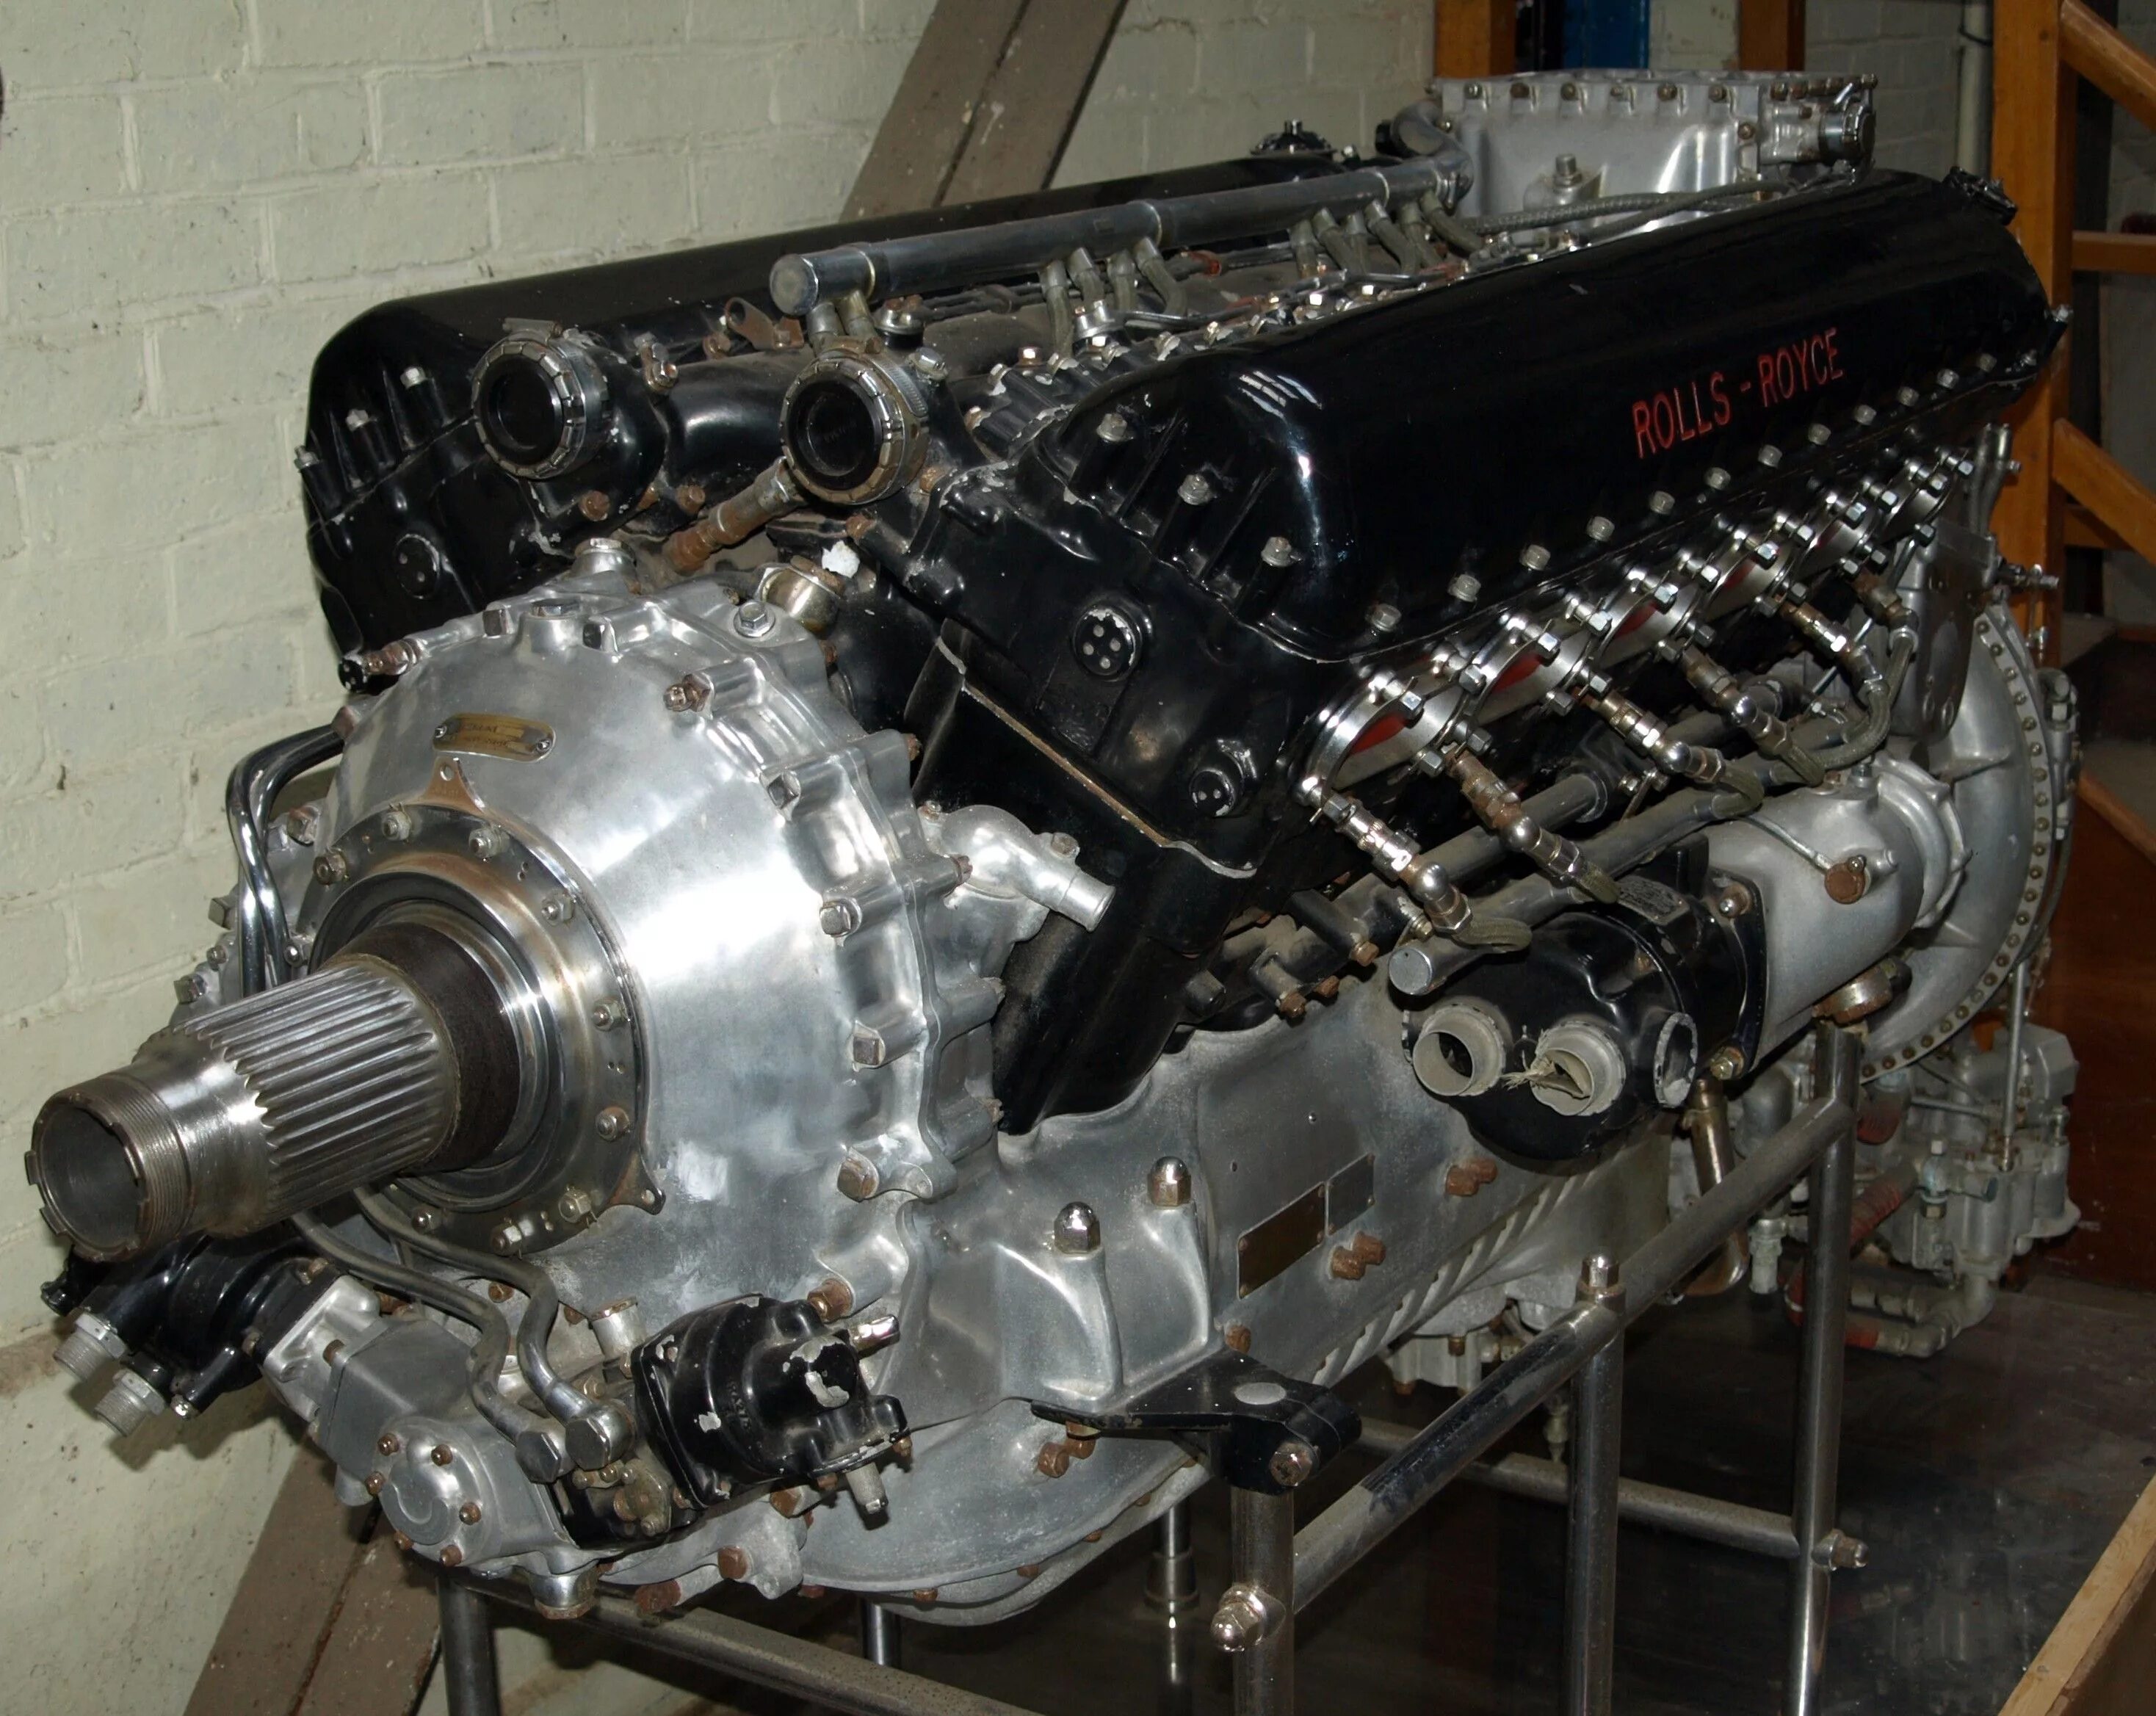 Двигатель роллс ройс. Двигатель Rolls-Royce Merlin. Rolls Royce Merlin v12. Двигатель Rolls-Royce v12. Rolls-Royce Merlin v12 машина.